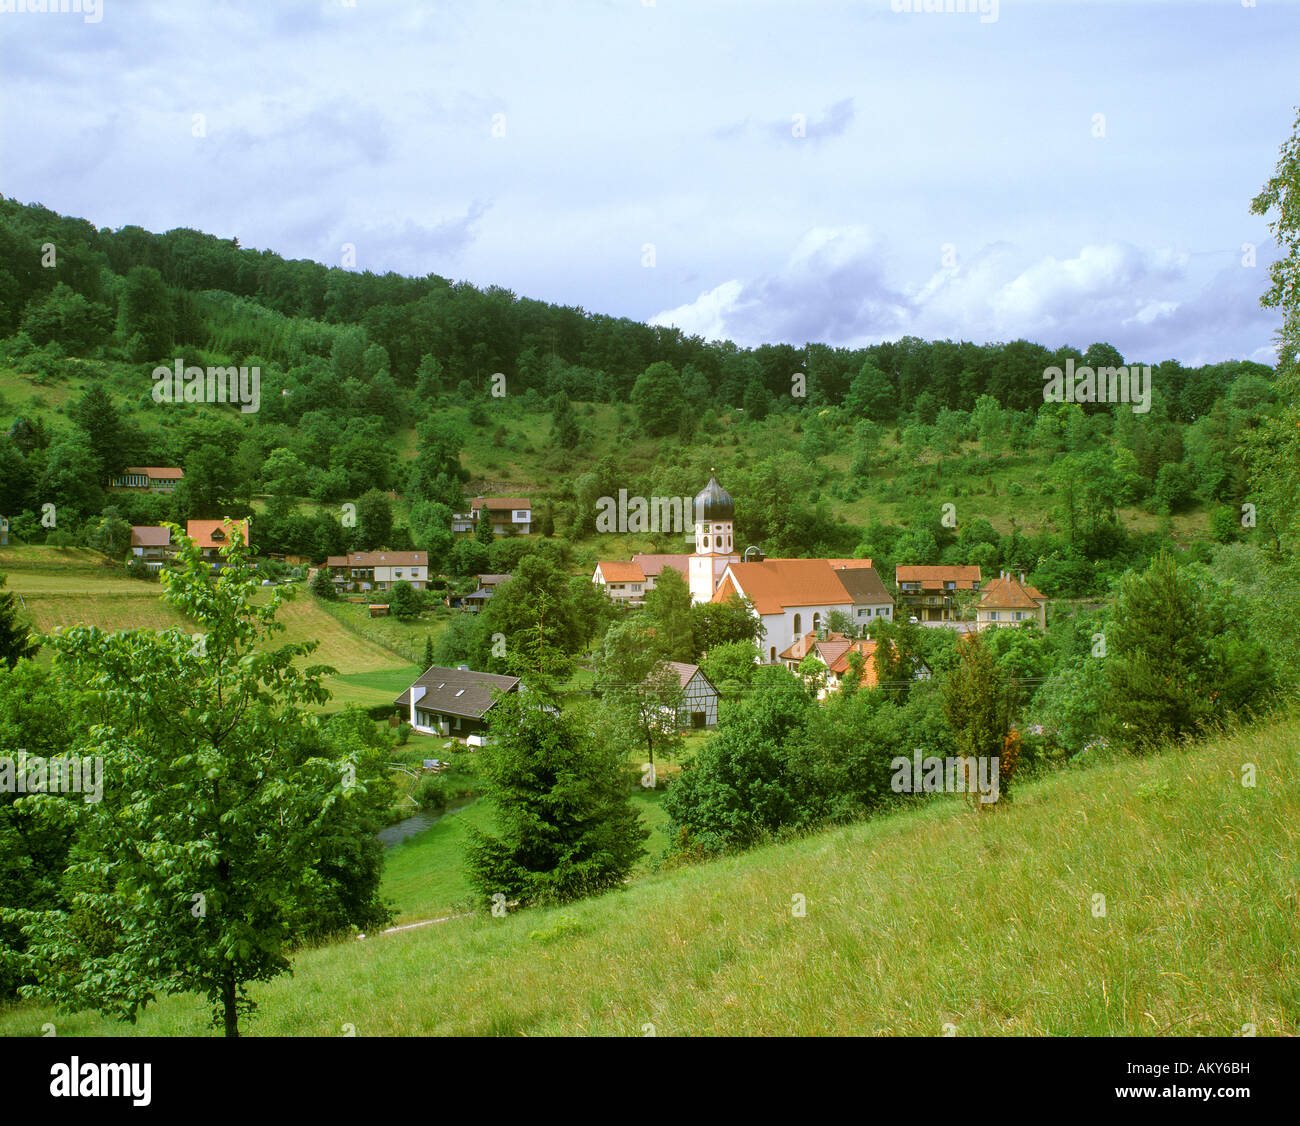 Bichishausen Lautertal vallée de la Lauter Allemagne Bade-wurtemberg Souabe Banque D'Images